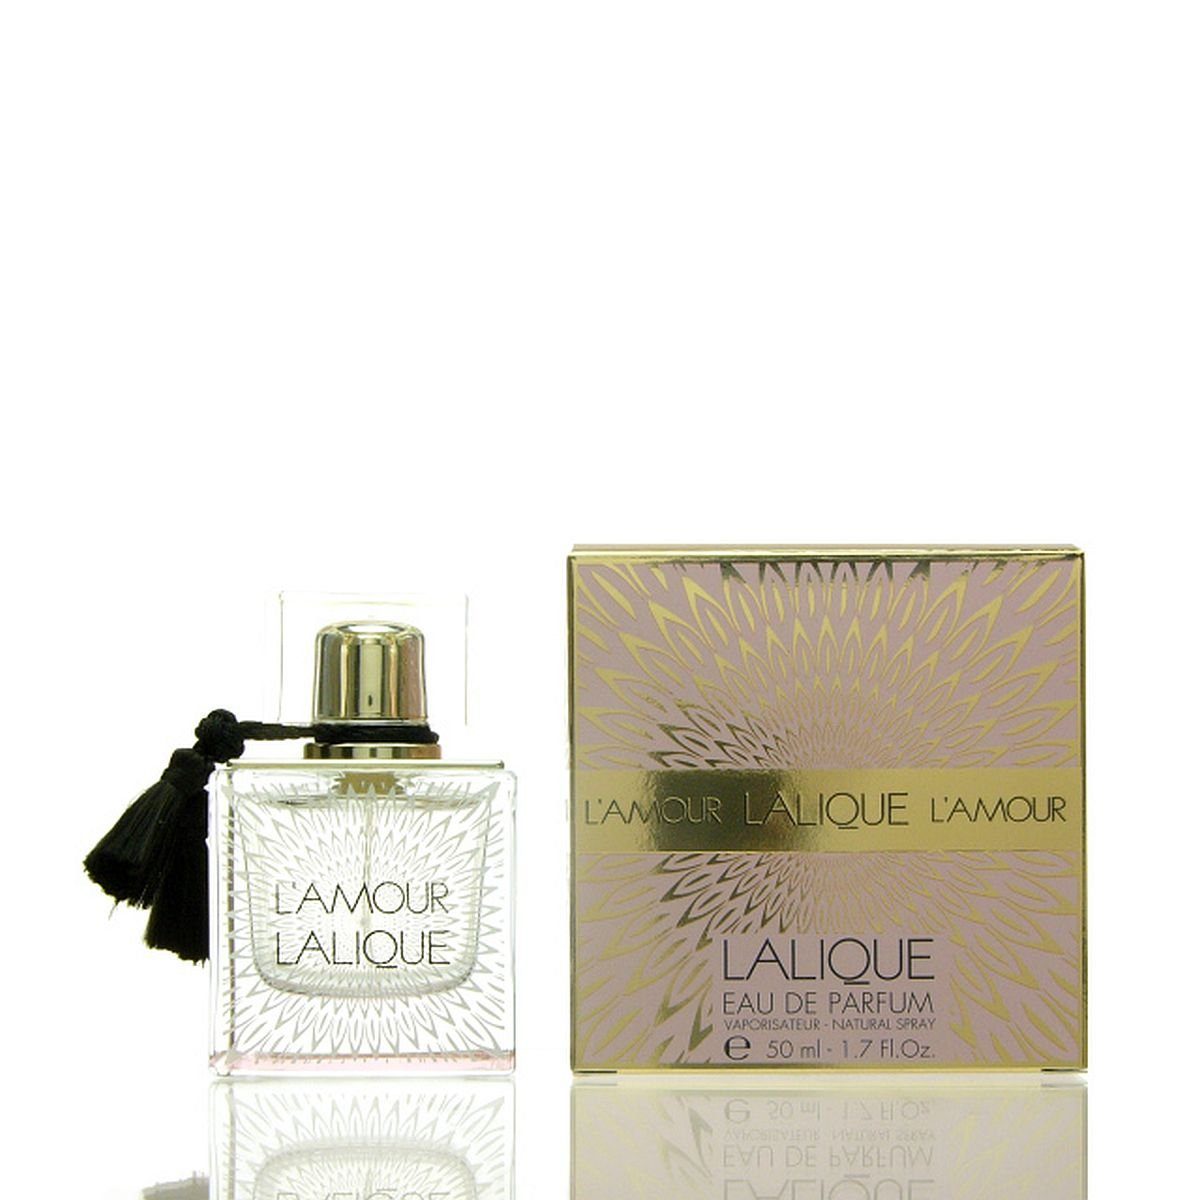 Lalique Eau de Parfum Lalique L'Amour Eau de Parfum 50 ml